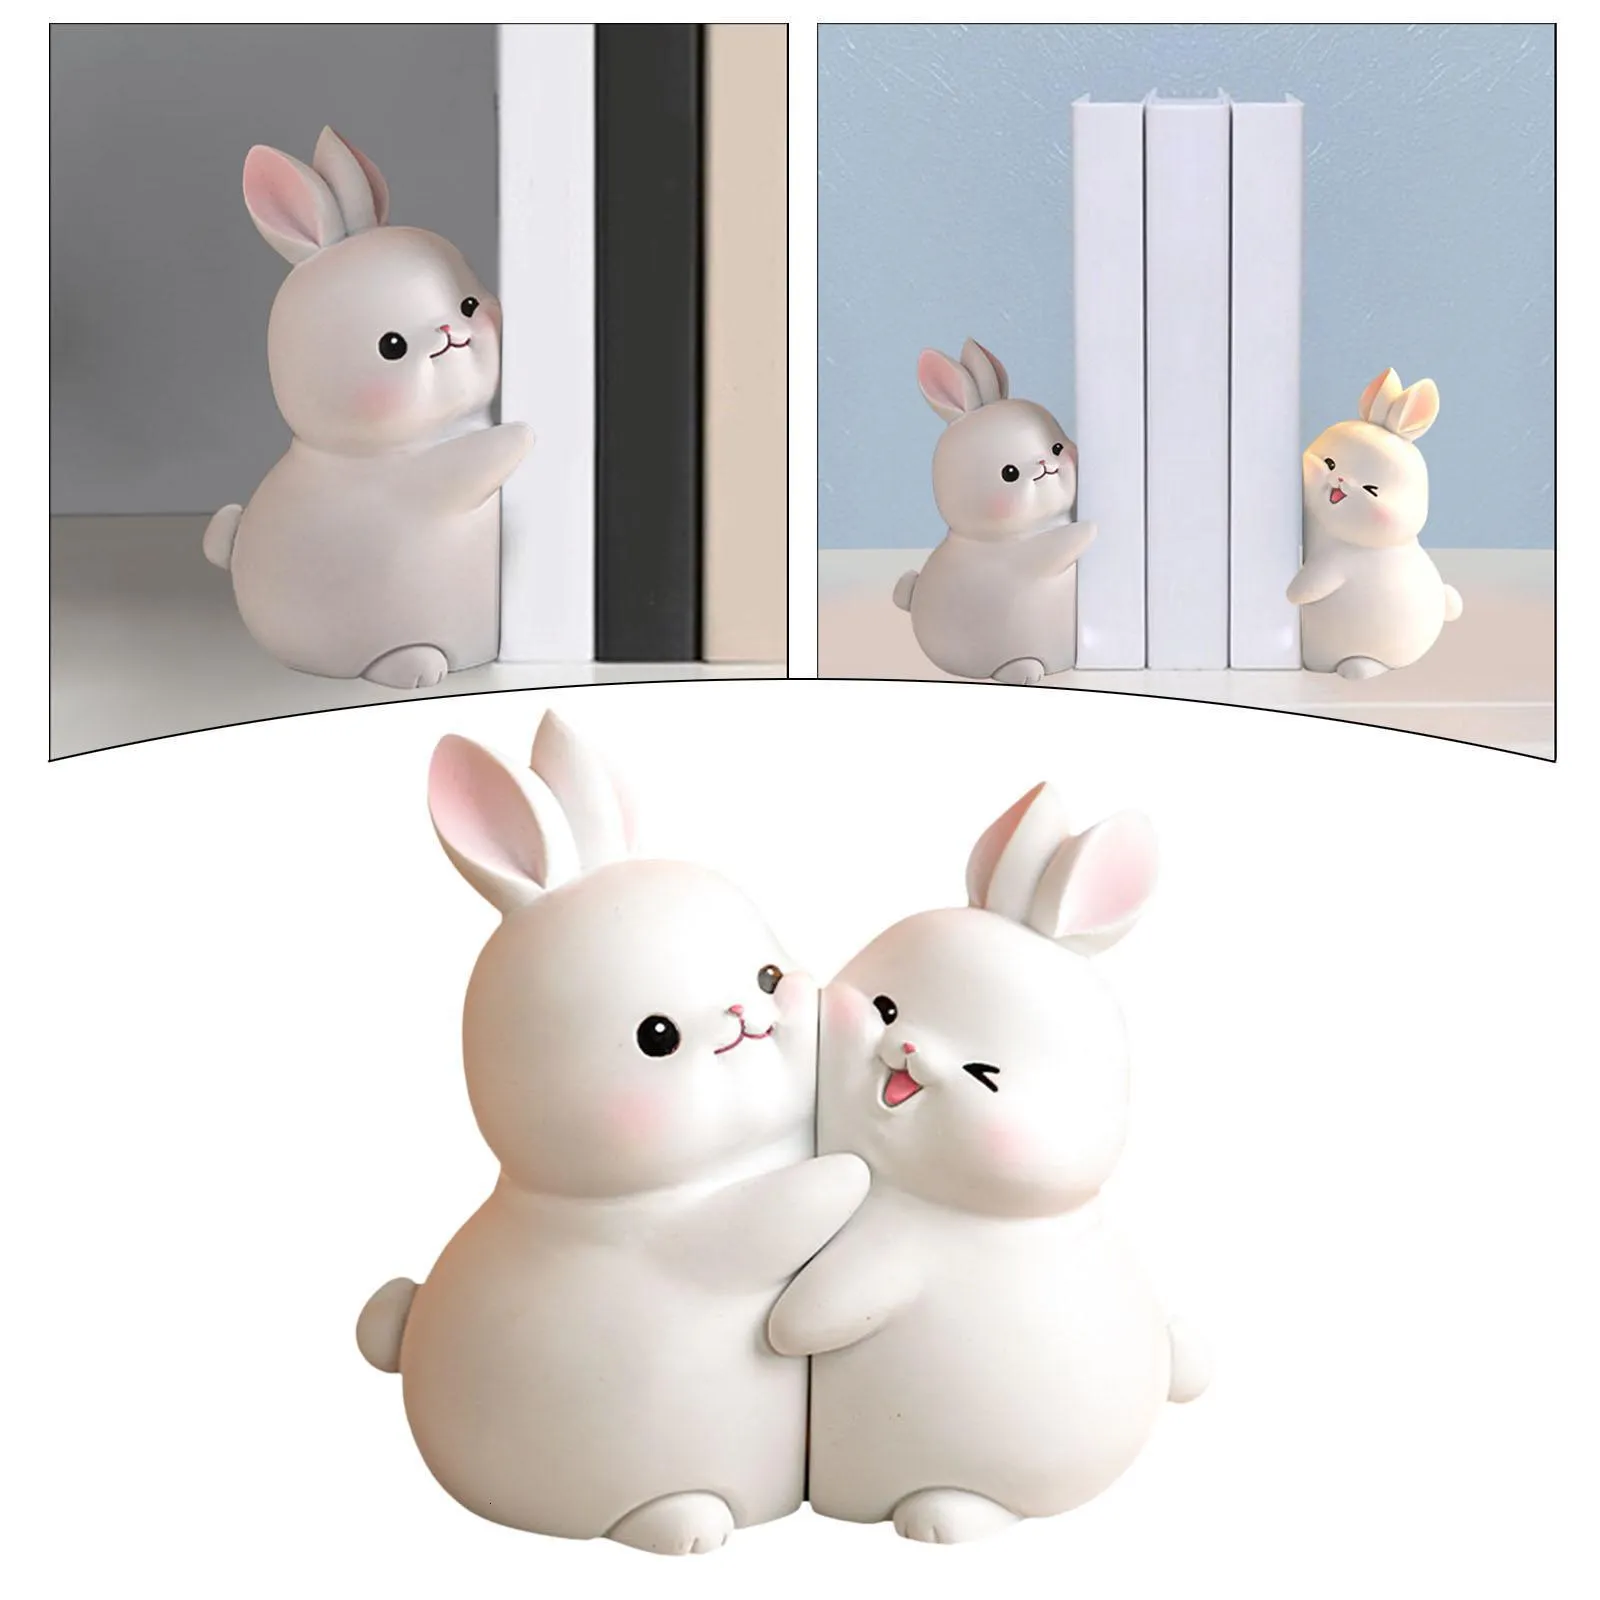 Objets décoratifs Figurines Joli serre-livres de lapin serre-livres de lapin support de support serre-livres pour bureau bureau maison étagère ornements 230907